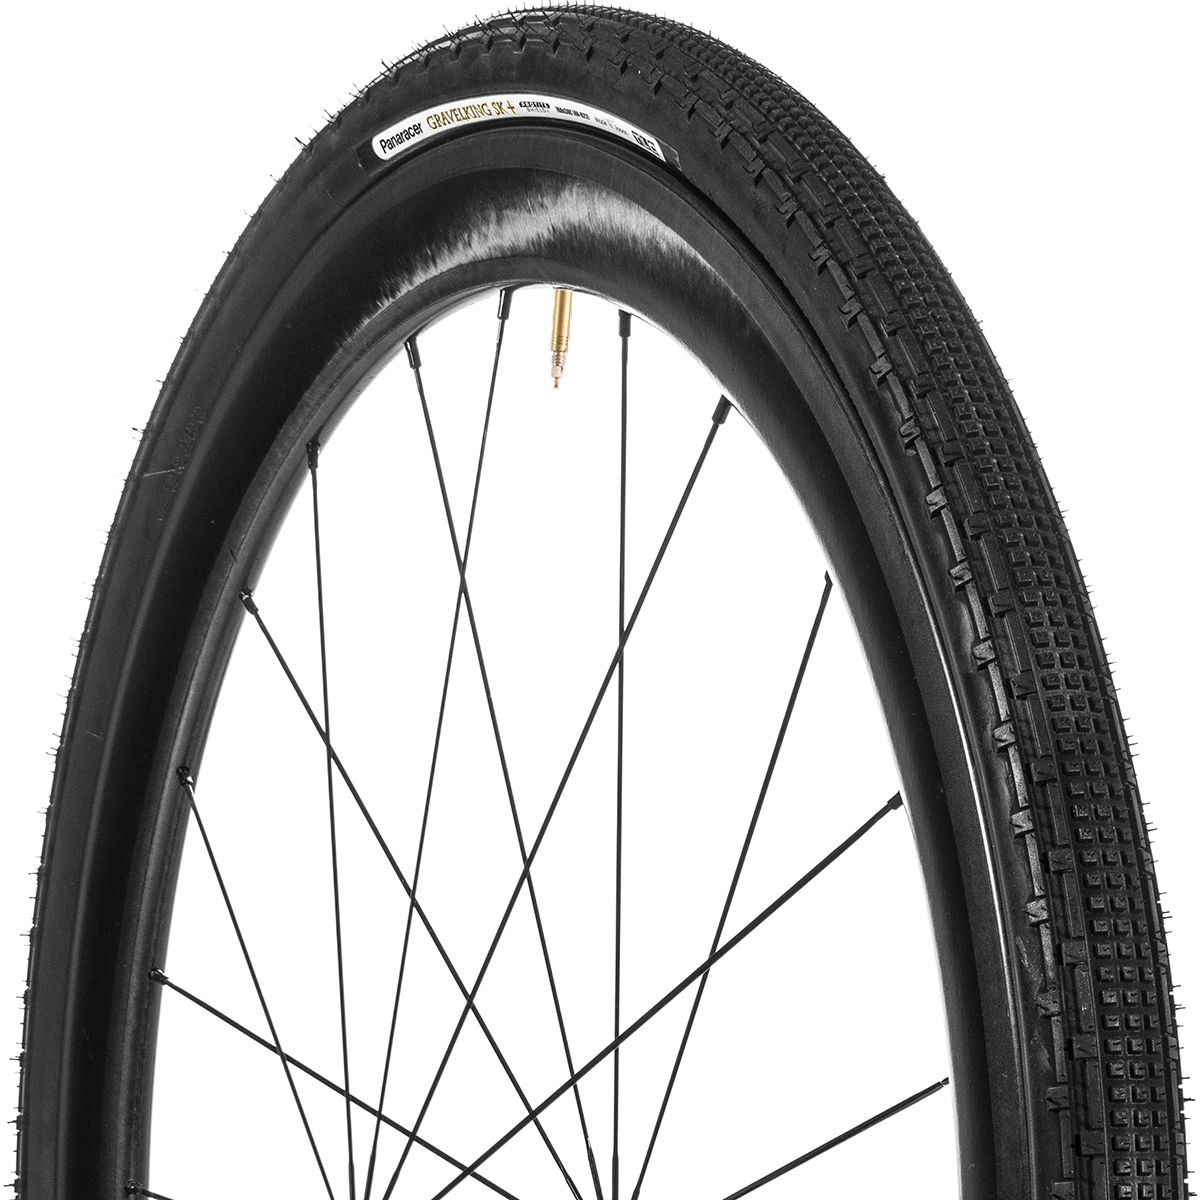 Panaracer Gravelking SK+ Tubeless Tire Black, 700x35